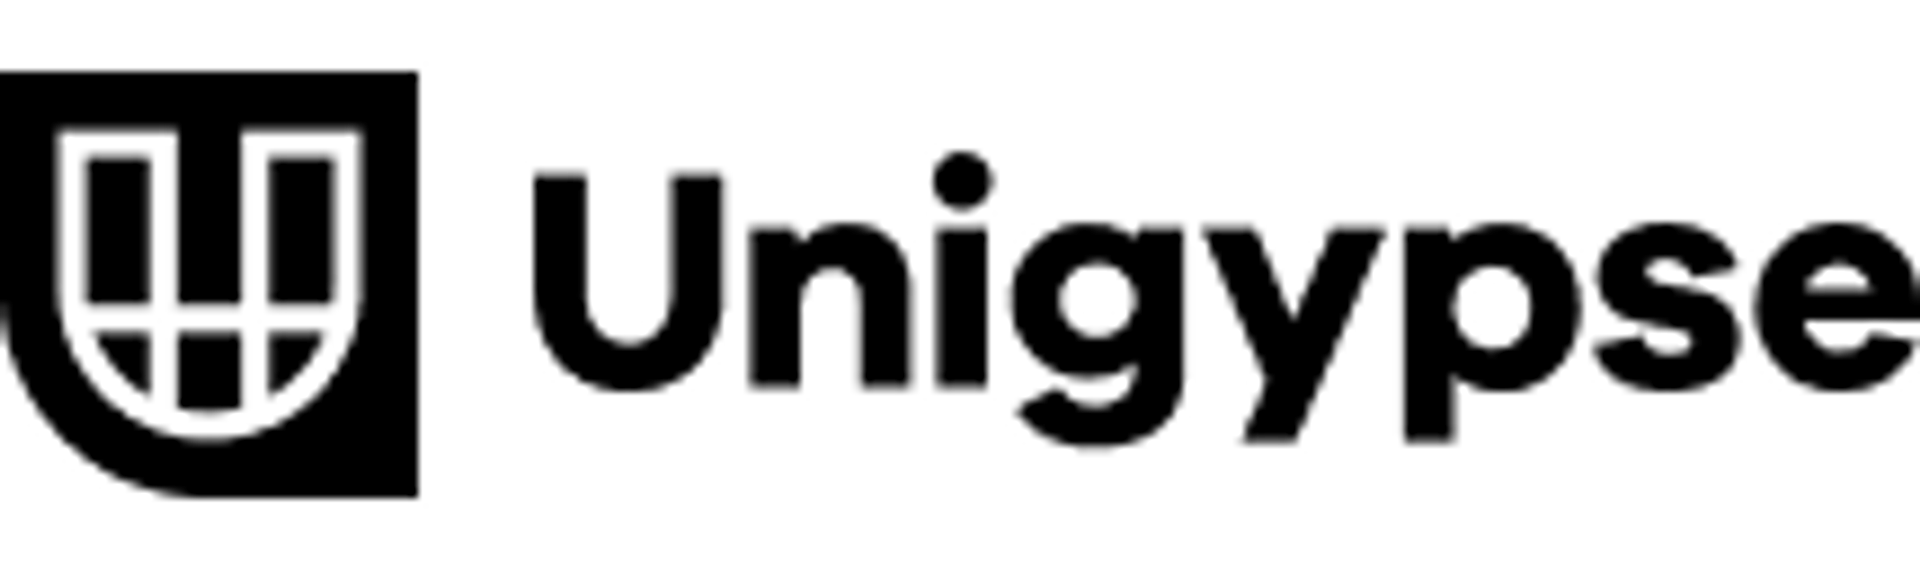 UNI GYPSE logo de circulaires